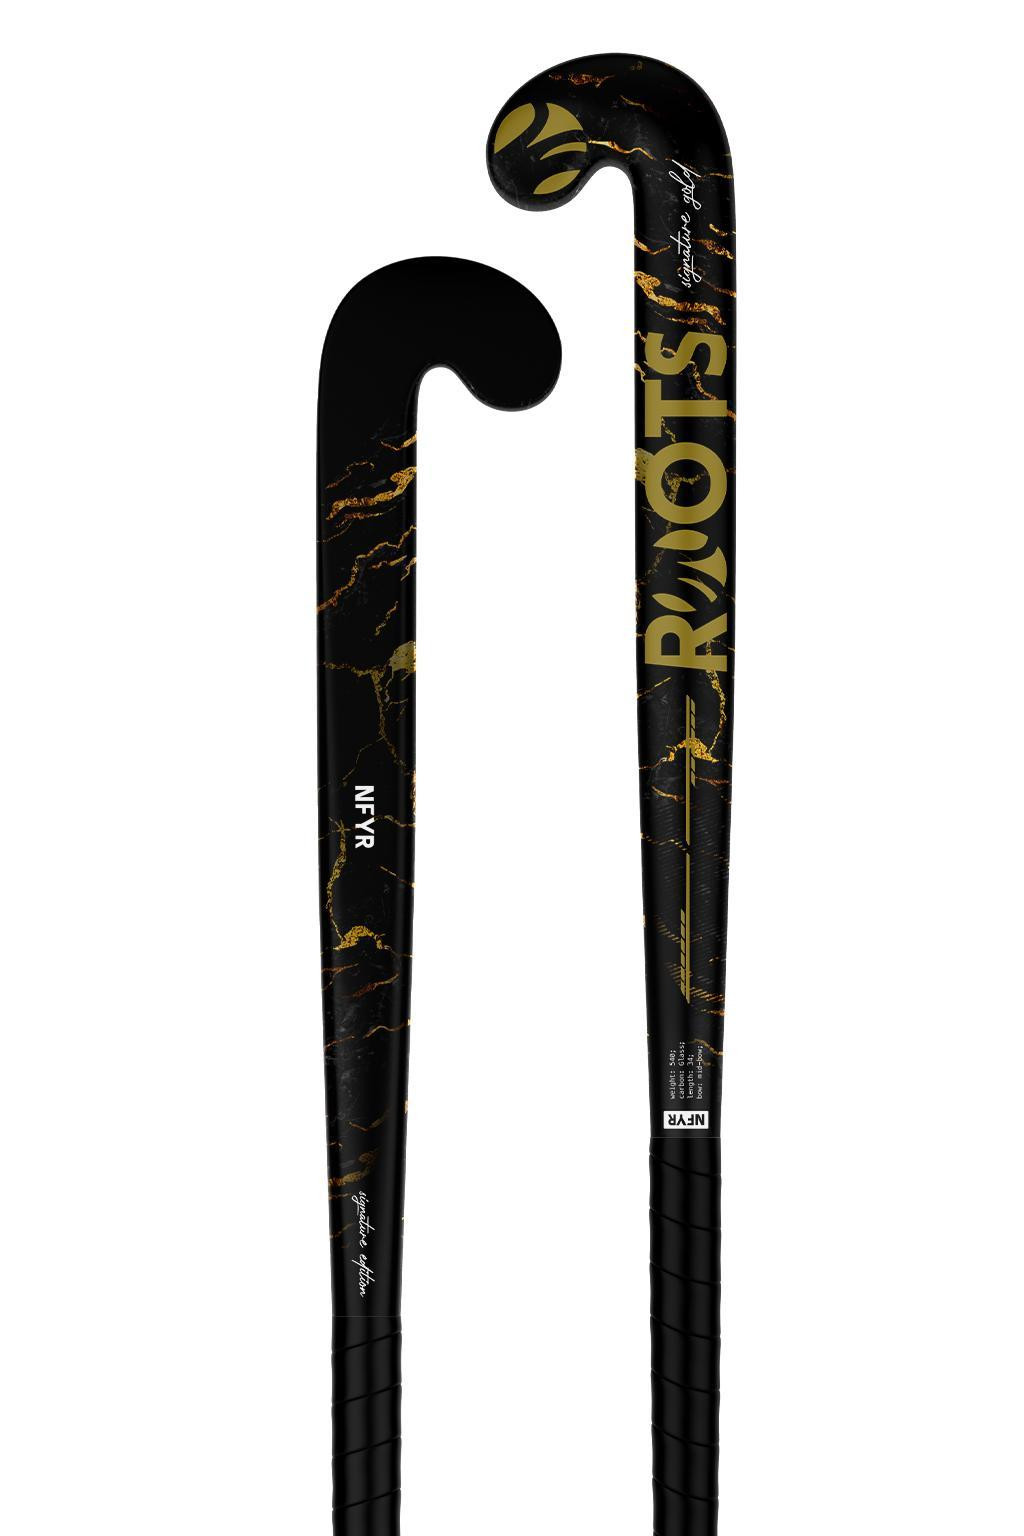 Hockeystick Signature Wood Series Black Amber